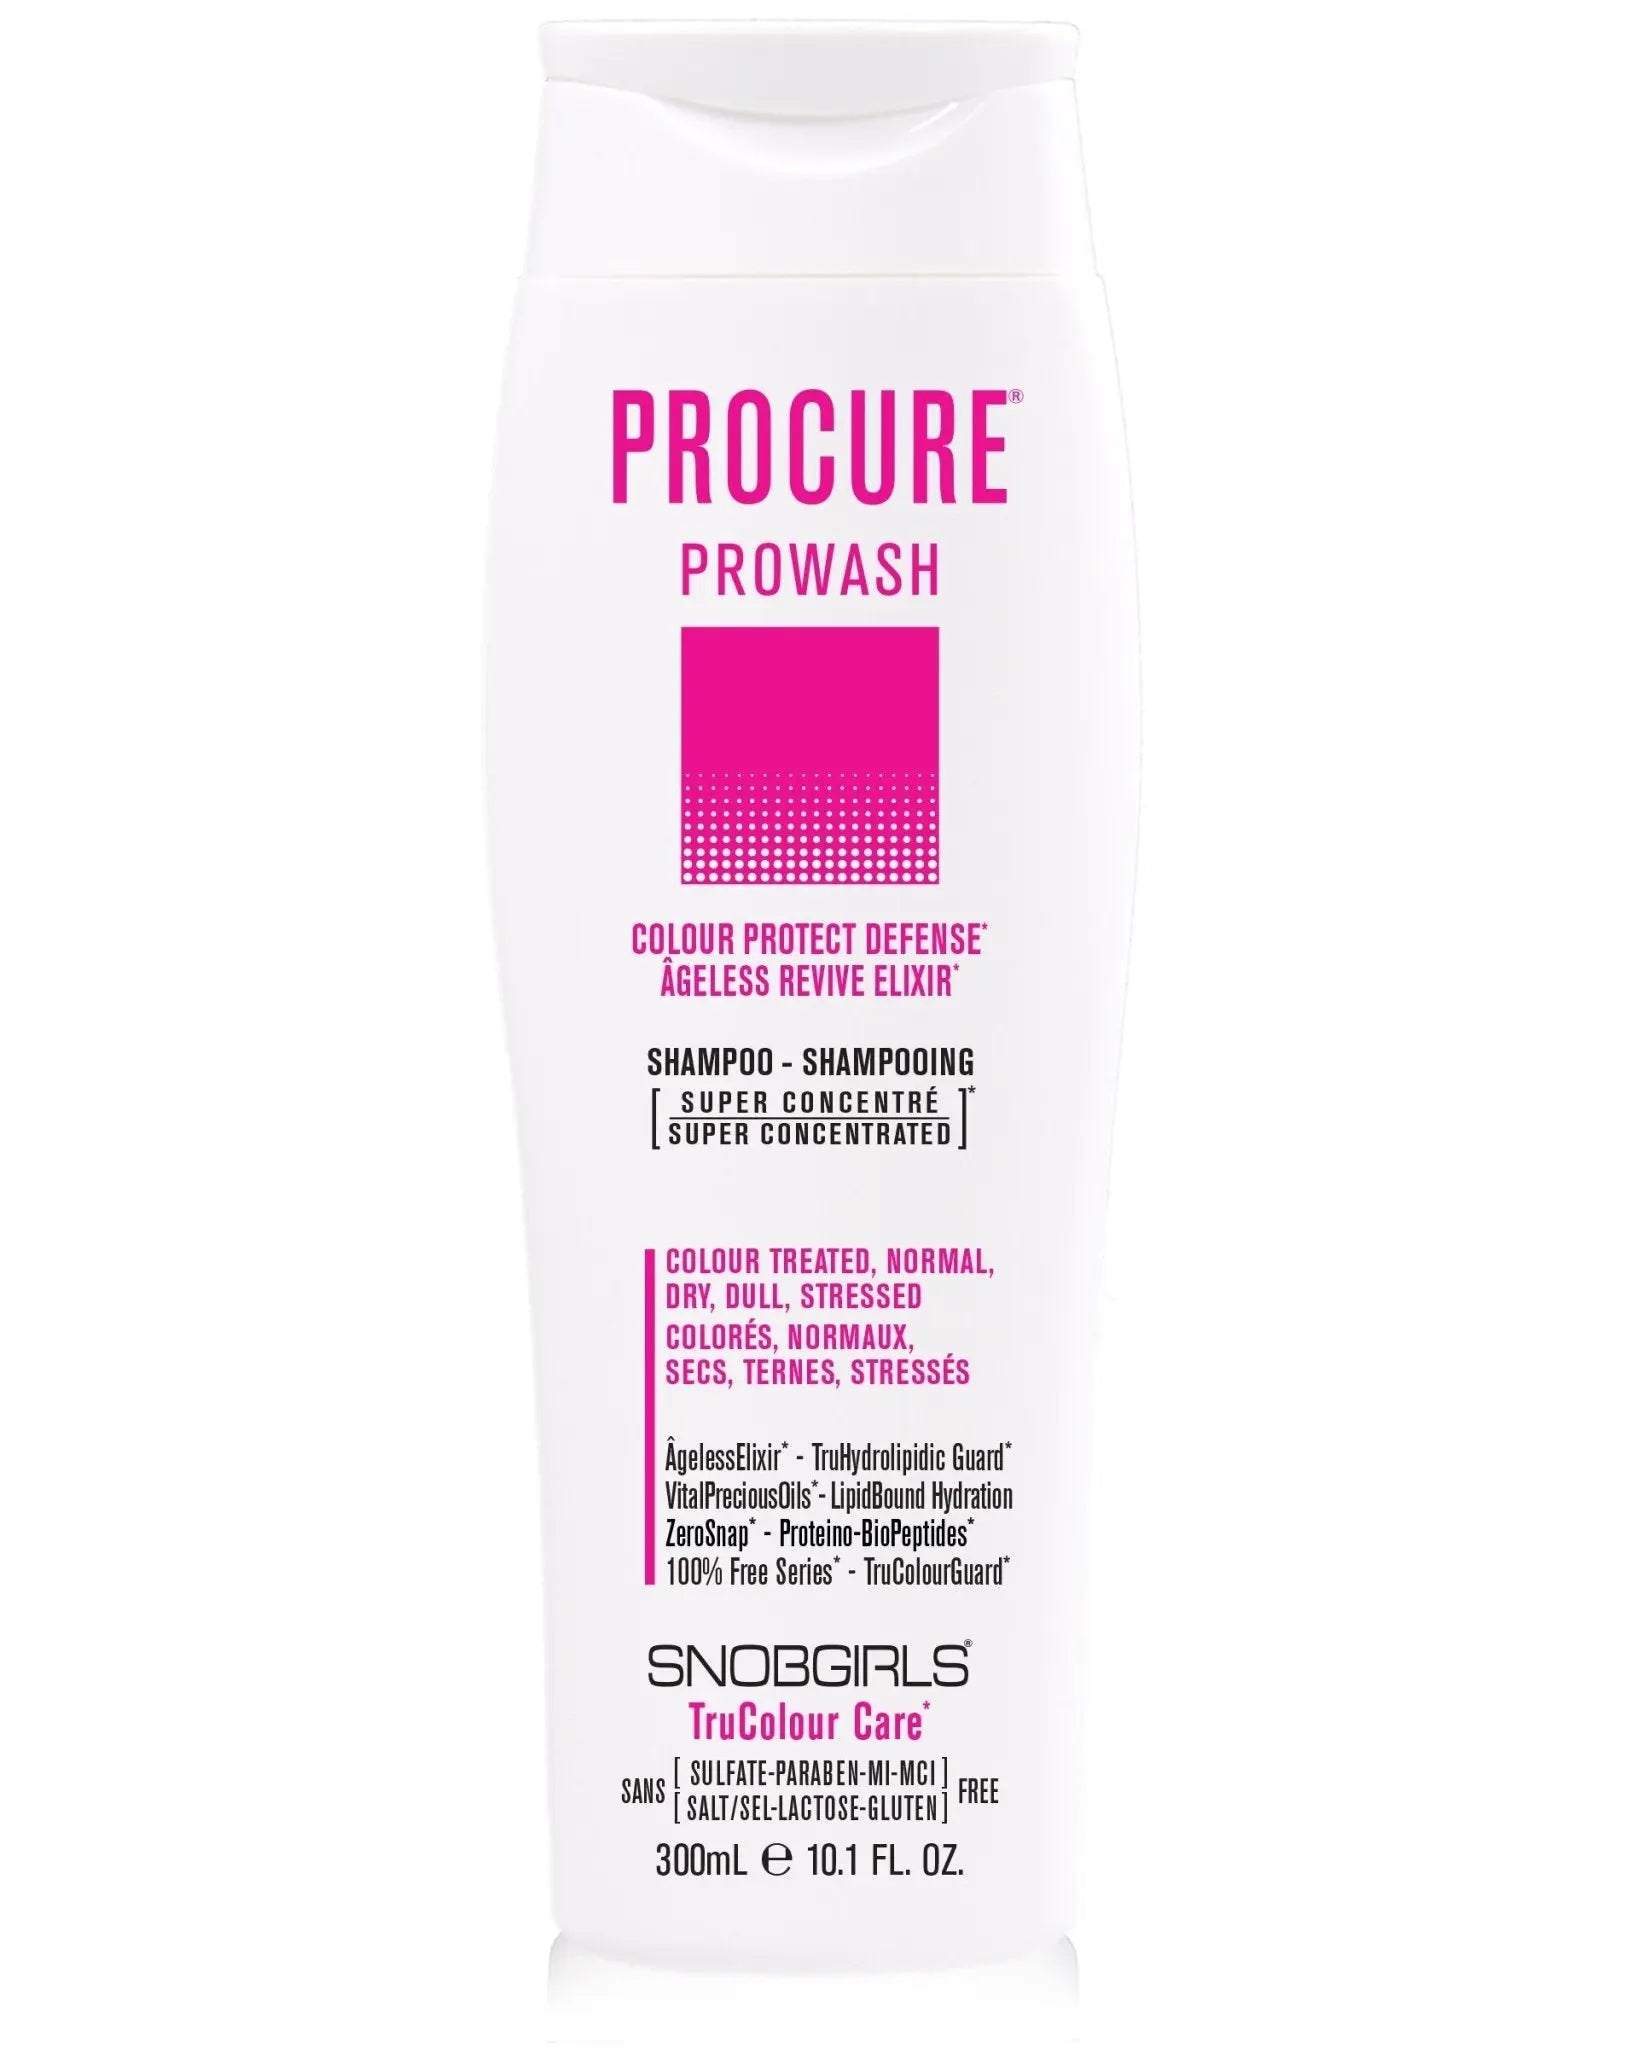 PROCURE Prowash Vegan Hair Shampoo - SNOBGIRLS.com